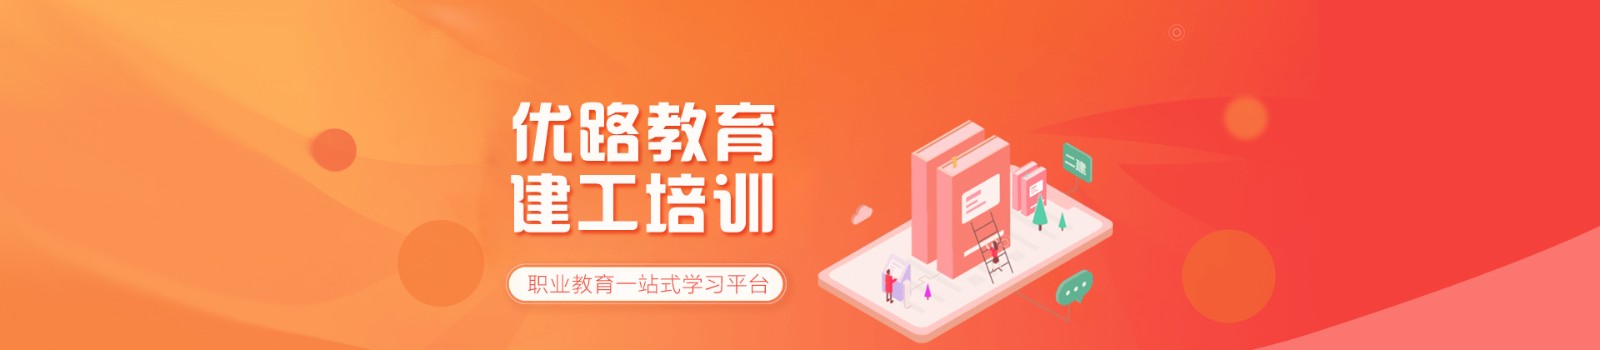 深圳优路教育 横幅广告